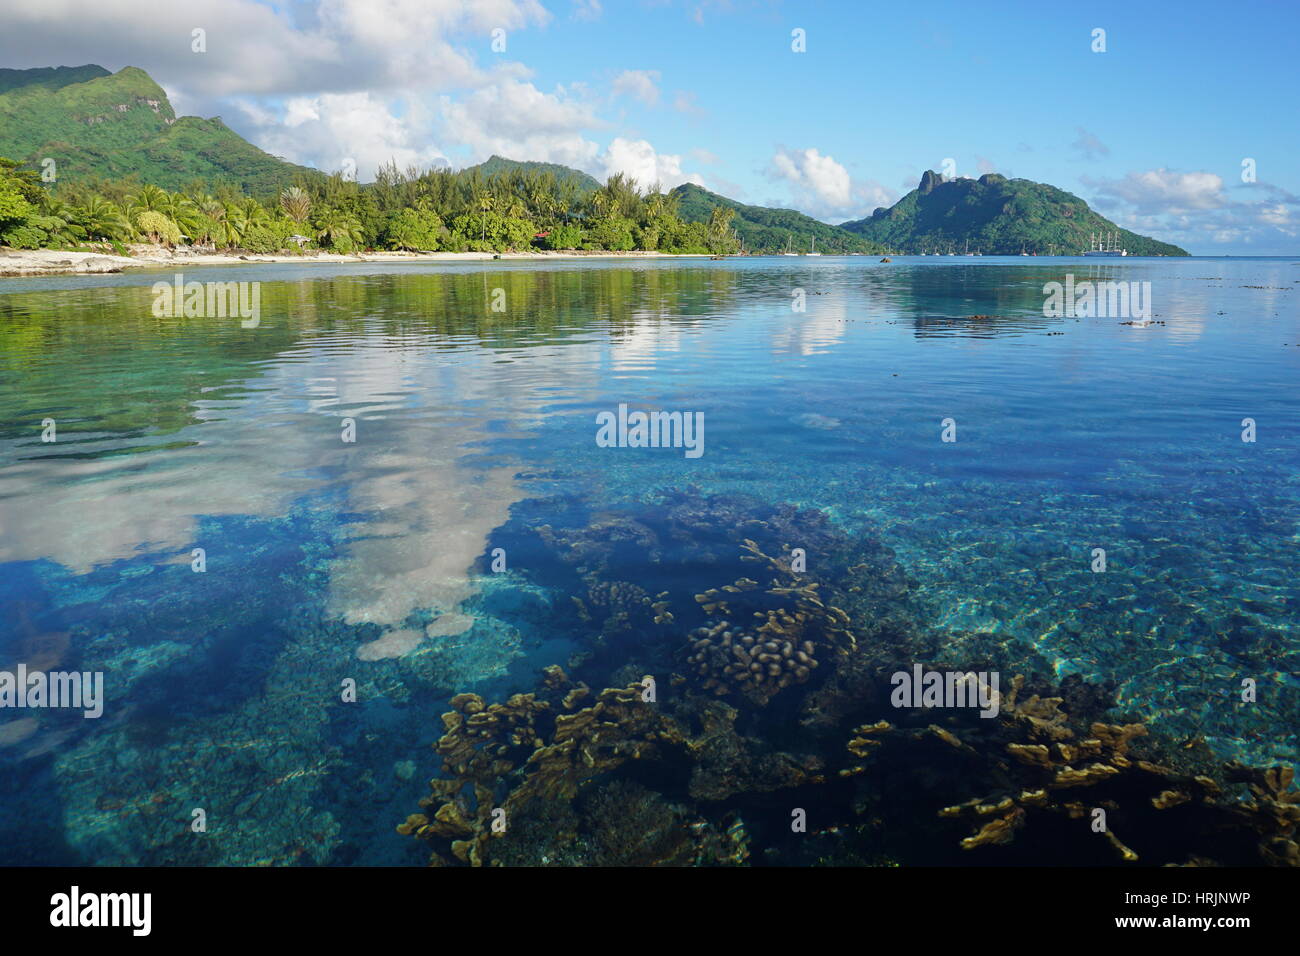 Polinesia francese Huahine isola il paesaggio costiero visto dalla laguna con coralli in acque poco profonde al di sotto della superficie del mare, oceano pacifico del sud Foto Stock